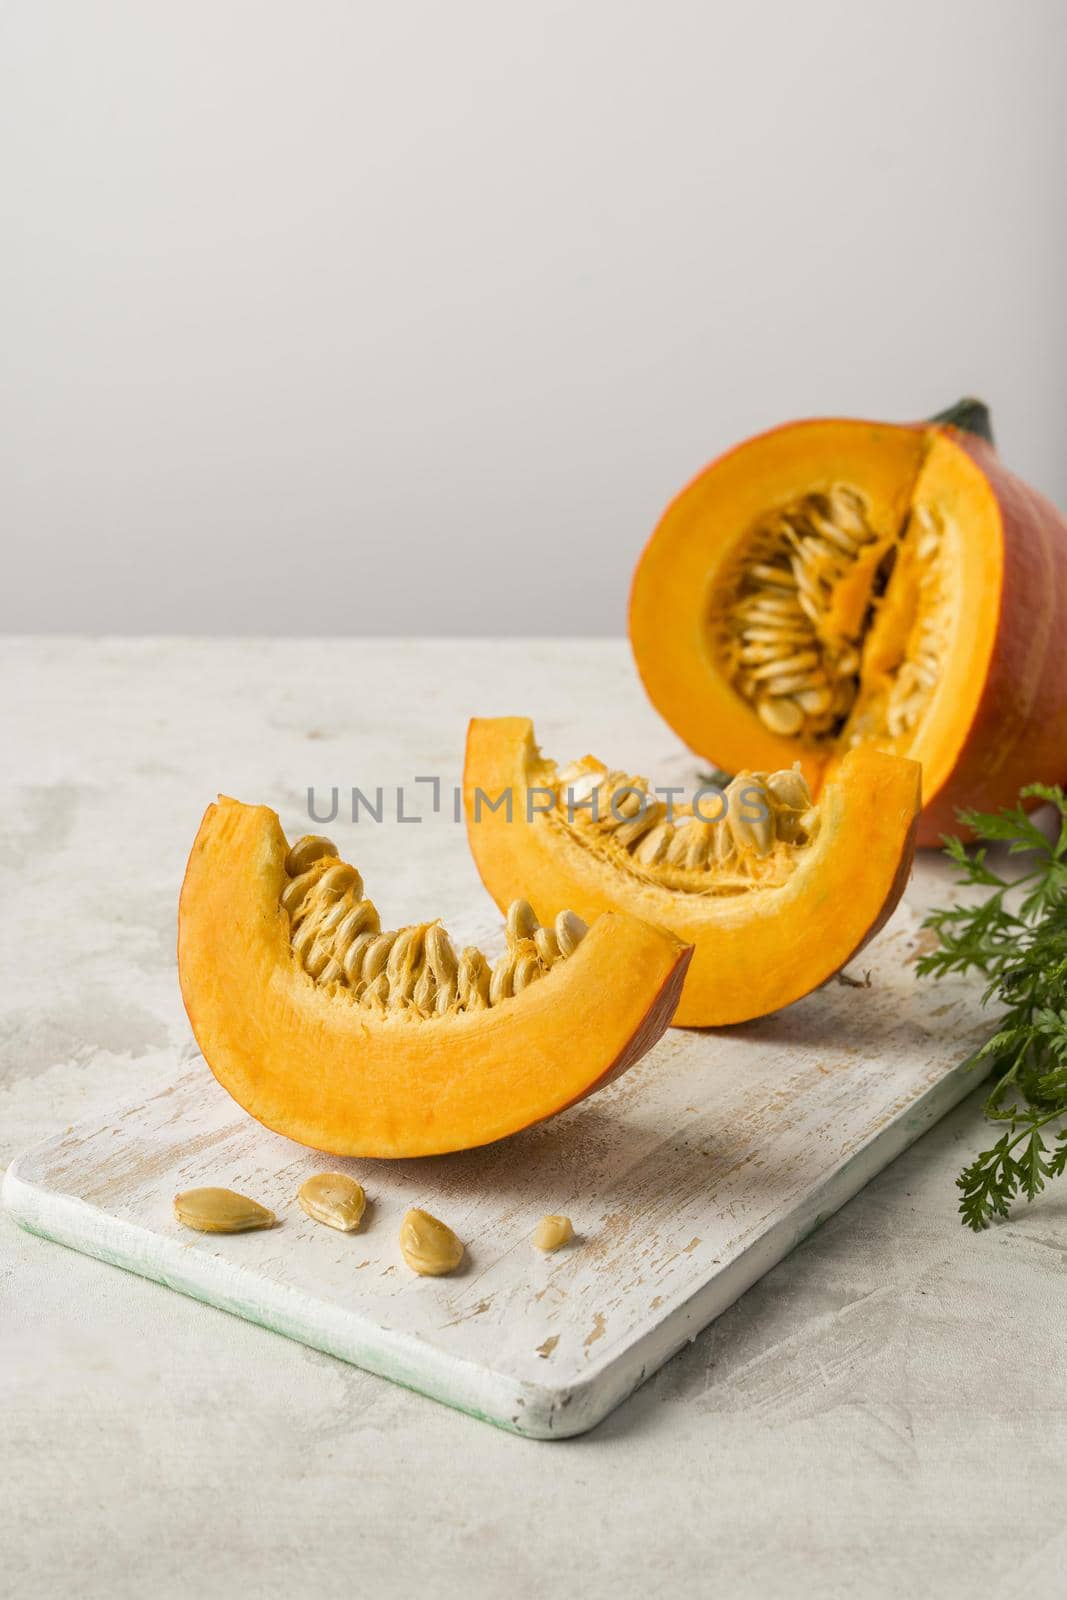 (1)pumpkin slices with seeds arrangement by Zahard